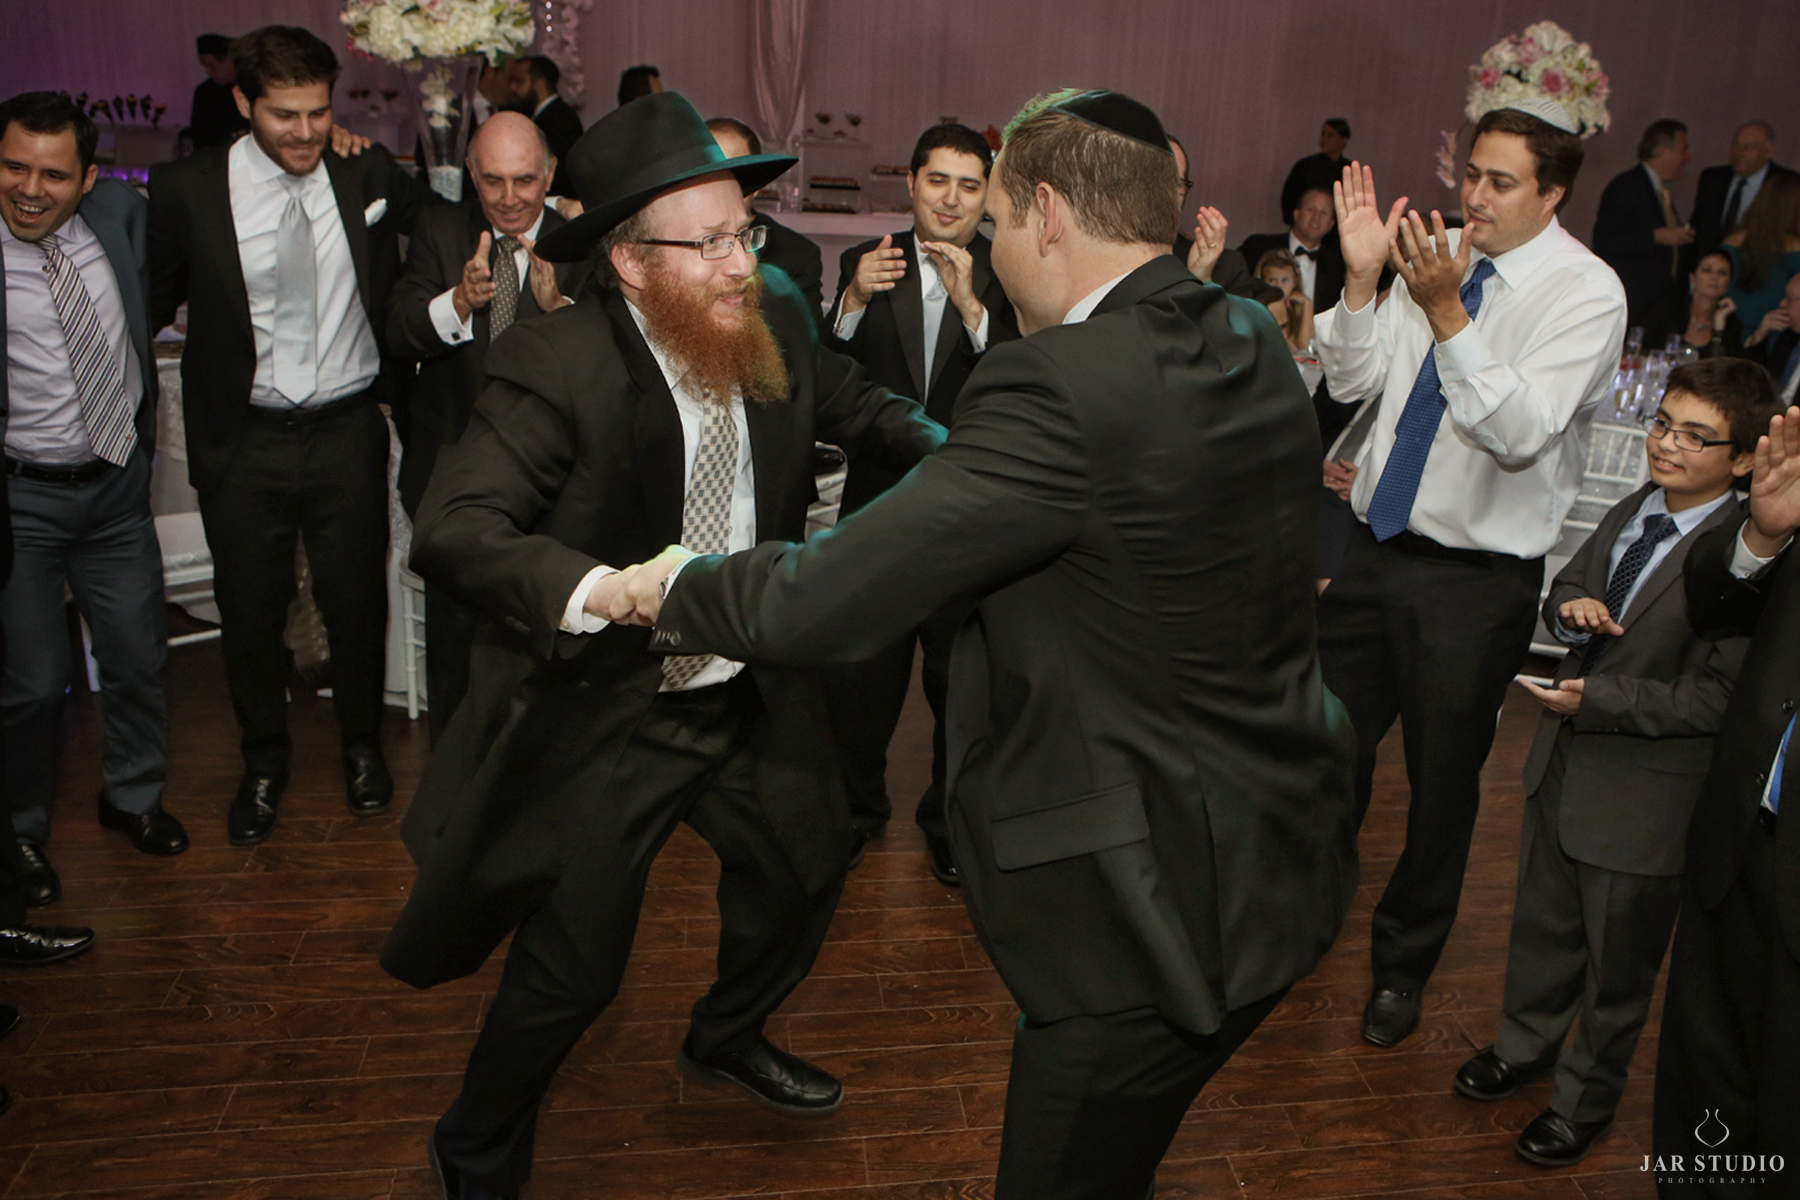 30-horah-dance-rabbi-wedding-photography-jarstudio.JPG